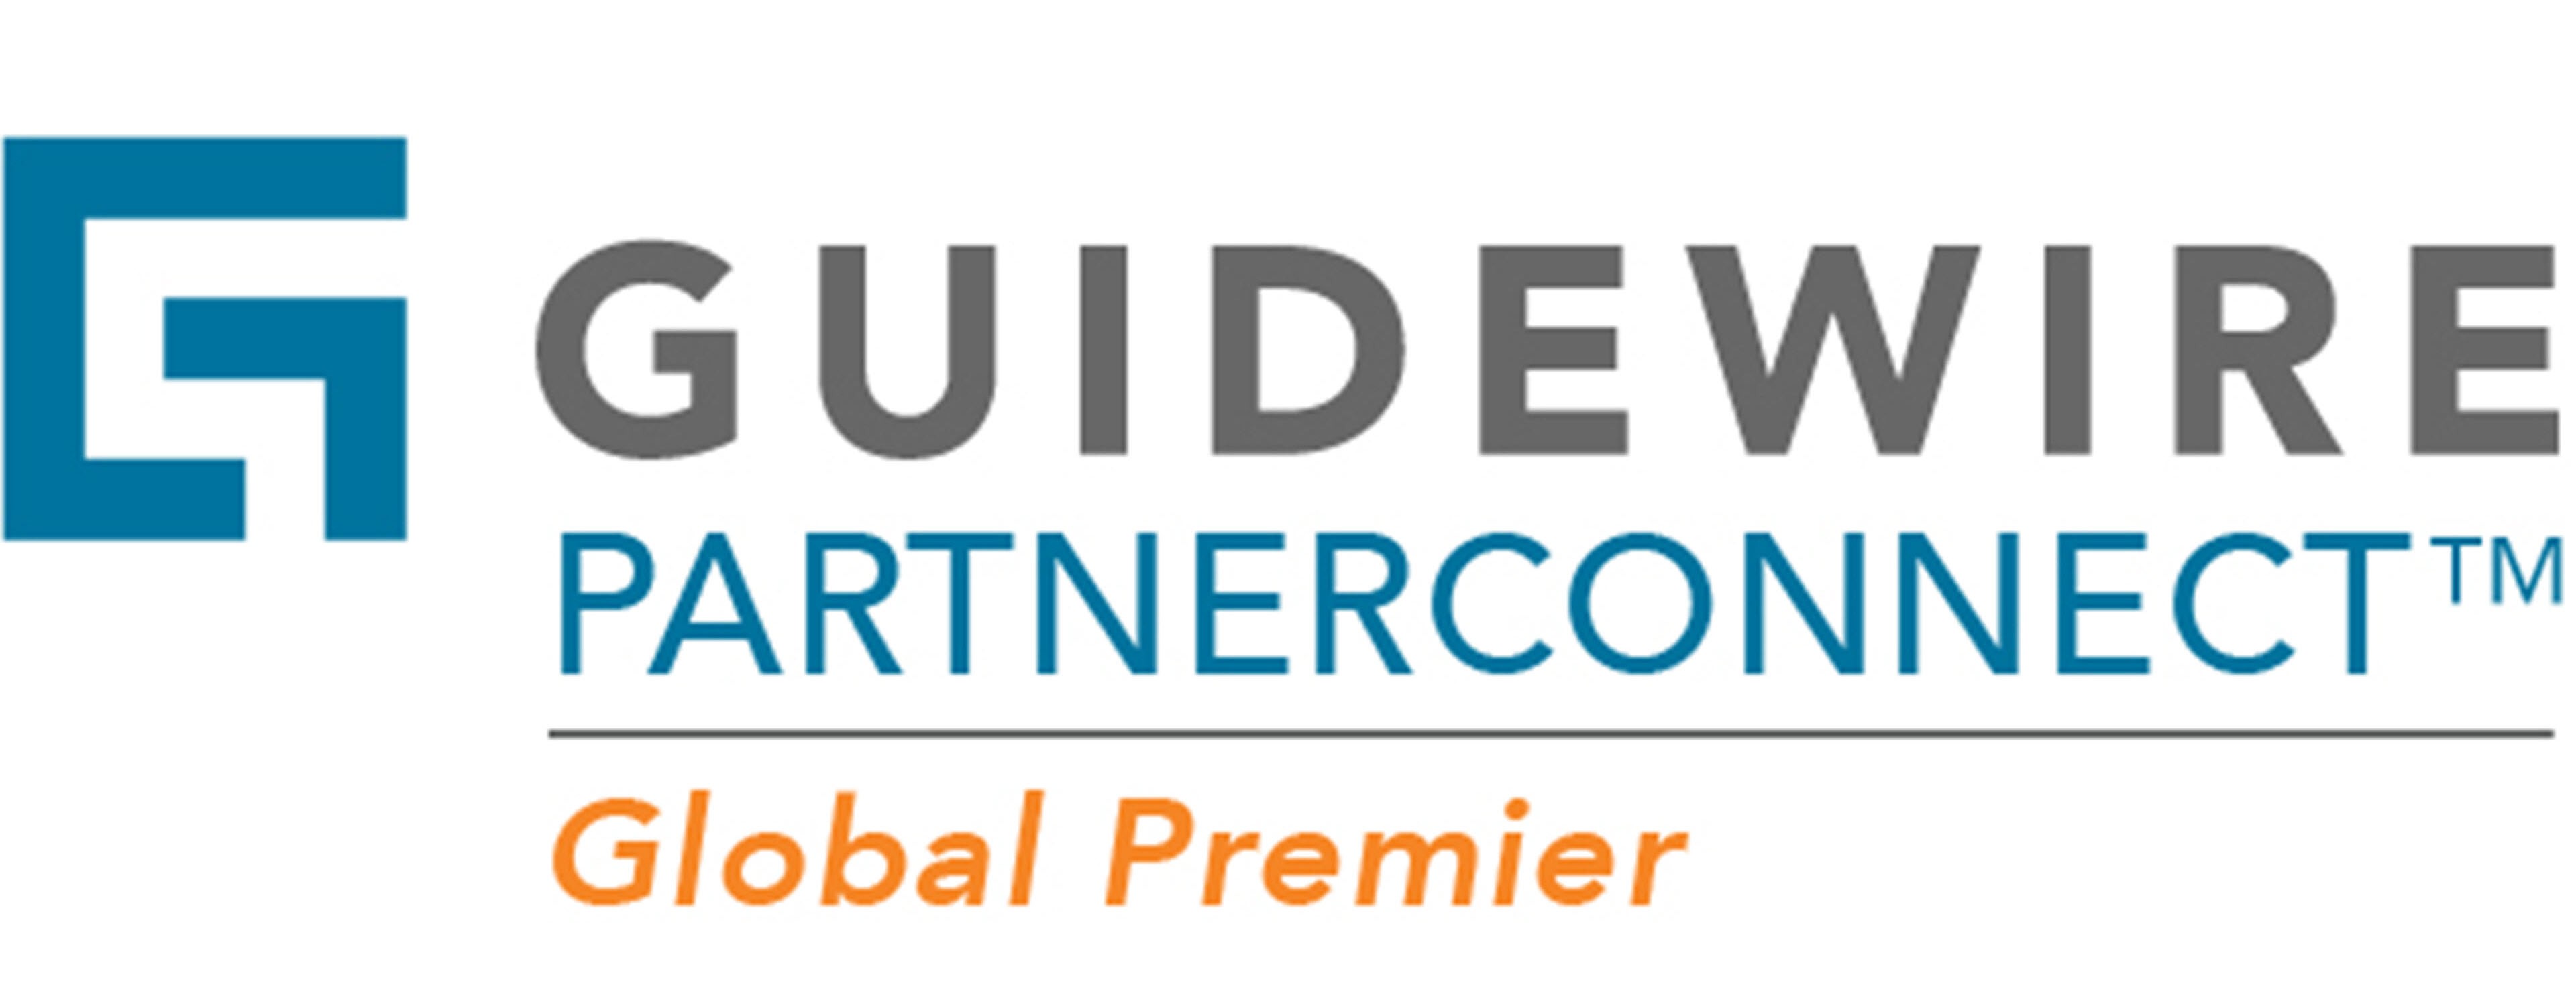             Guidewireのロゴ        